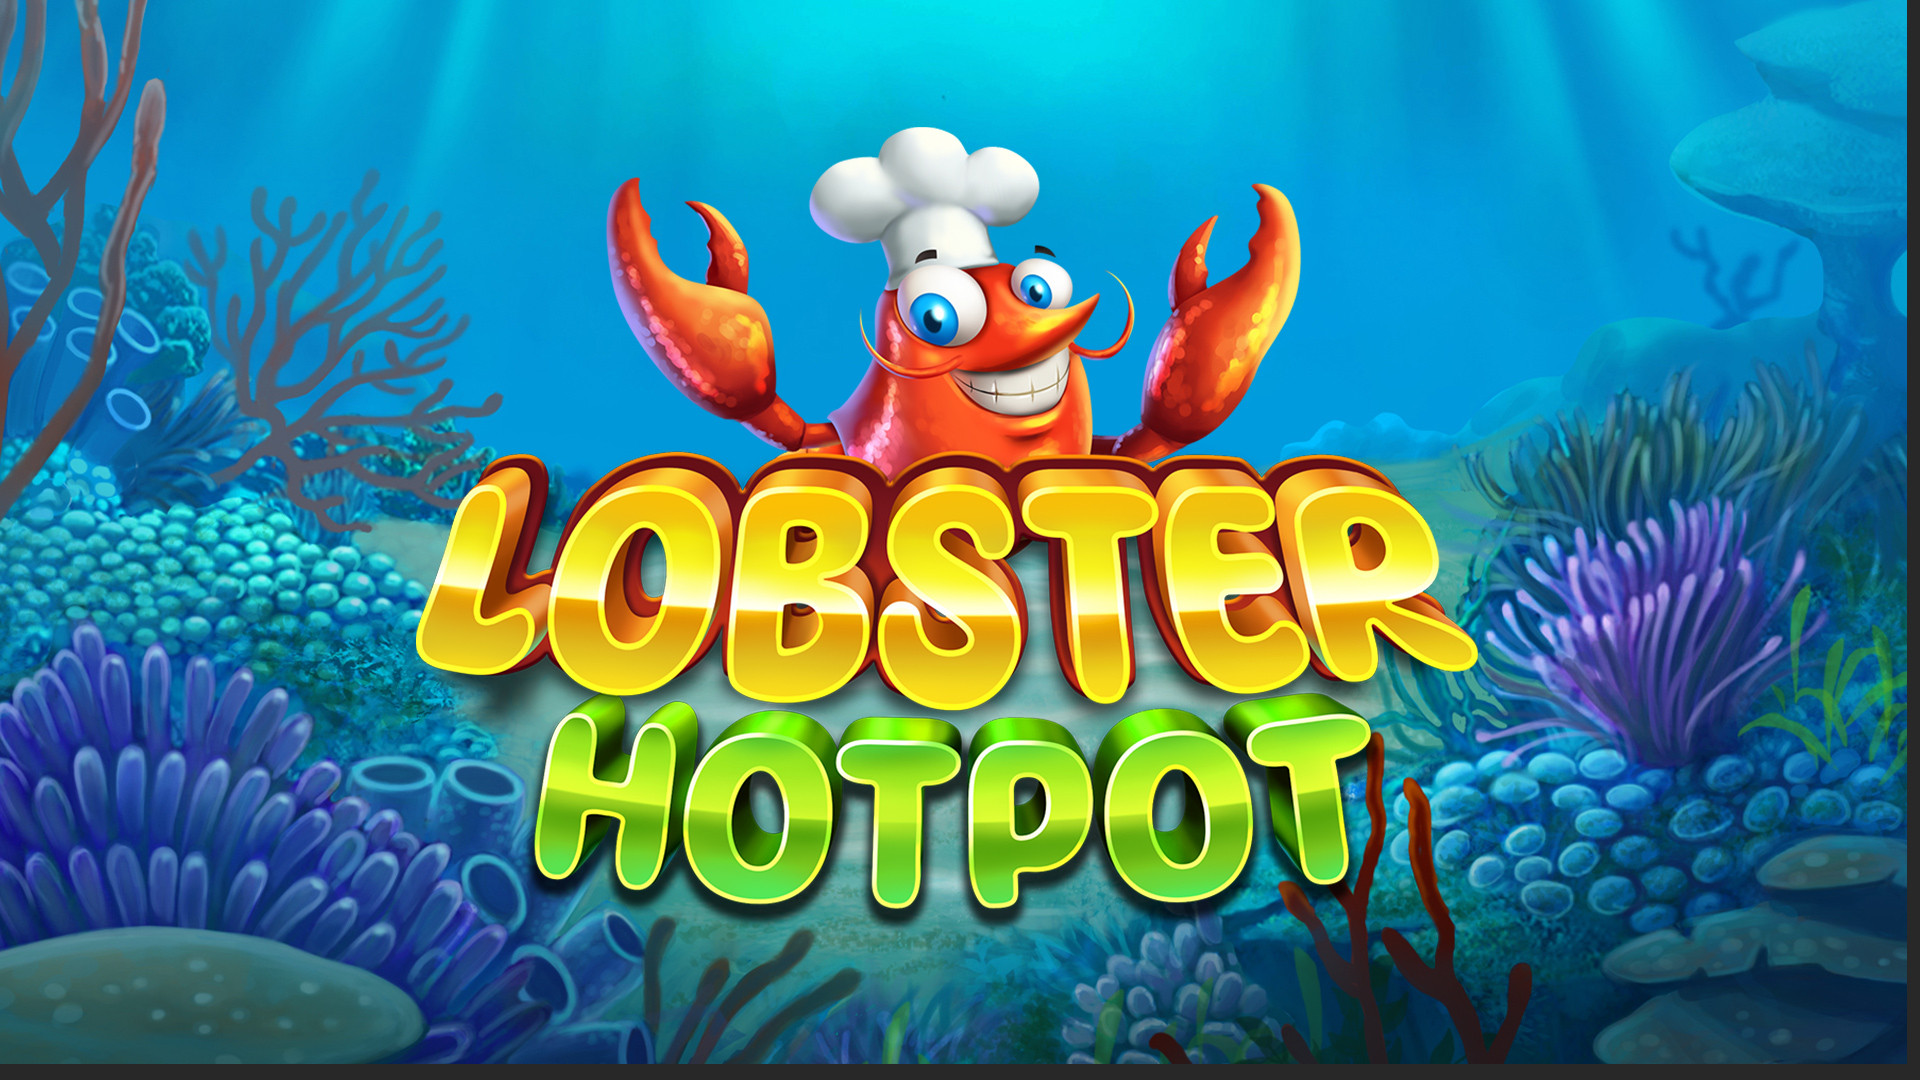 Lobster Hotpot